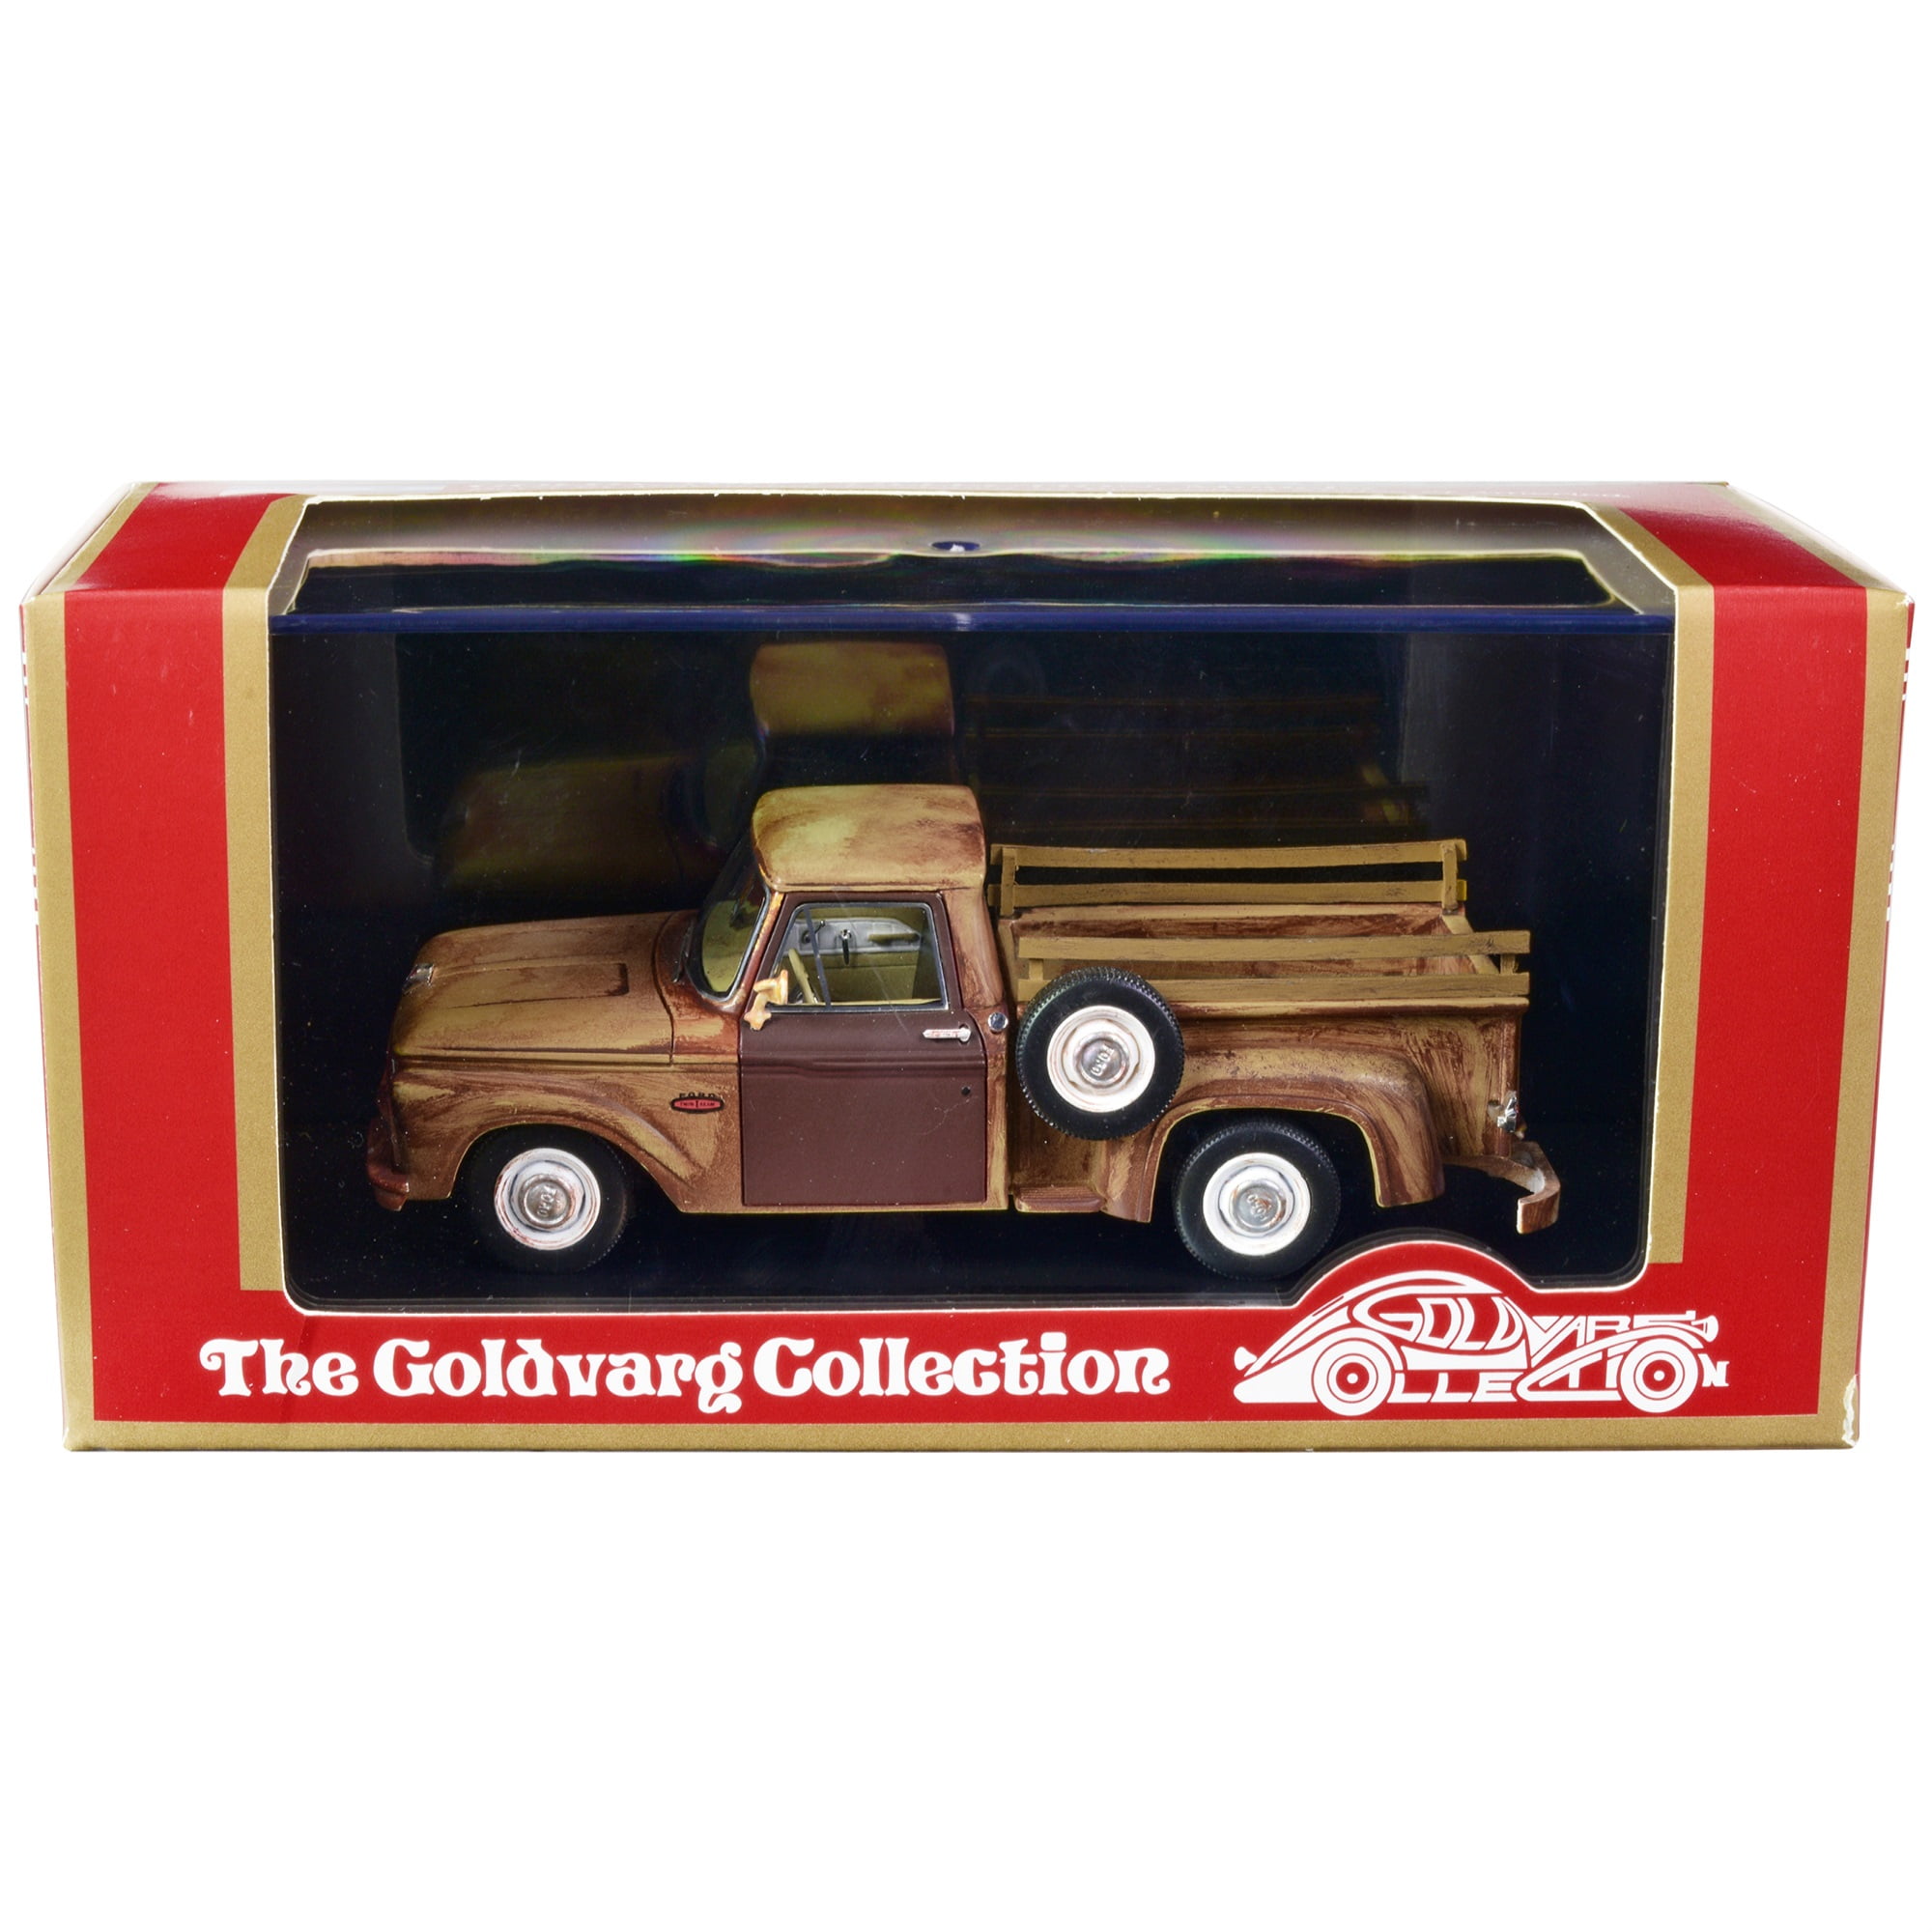 Goldvarg Collection GC-033A